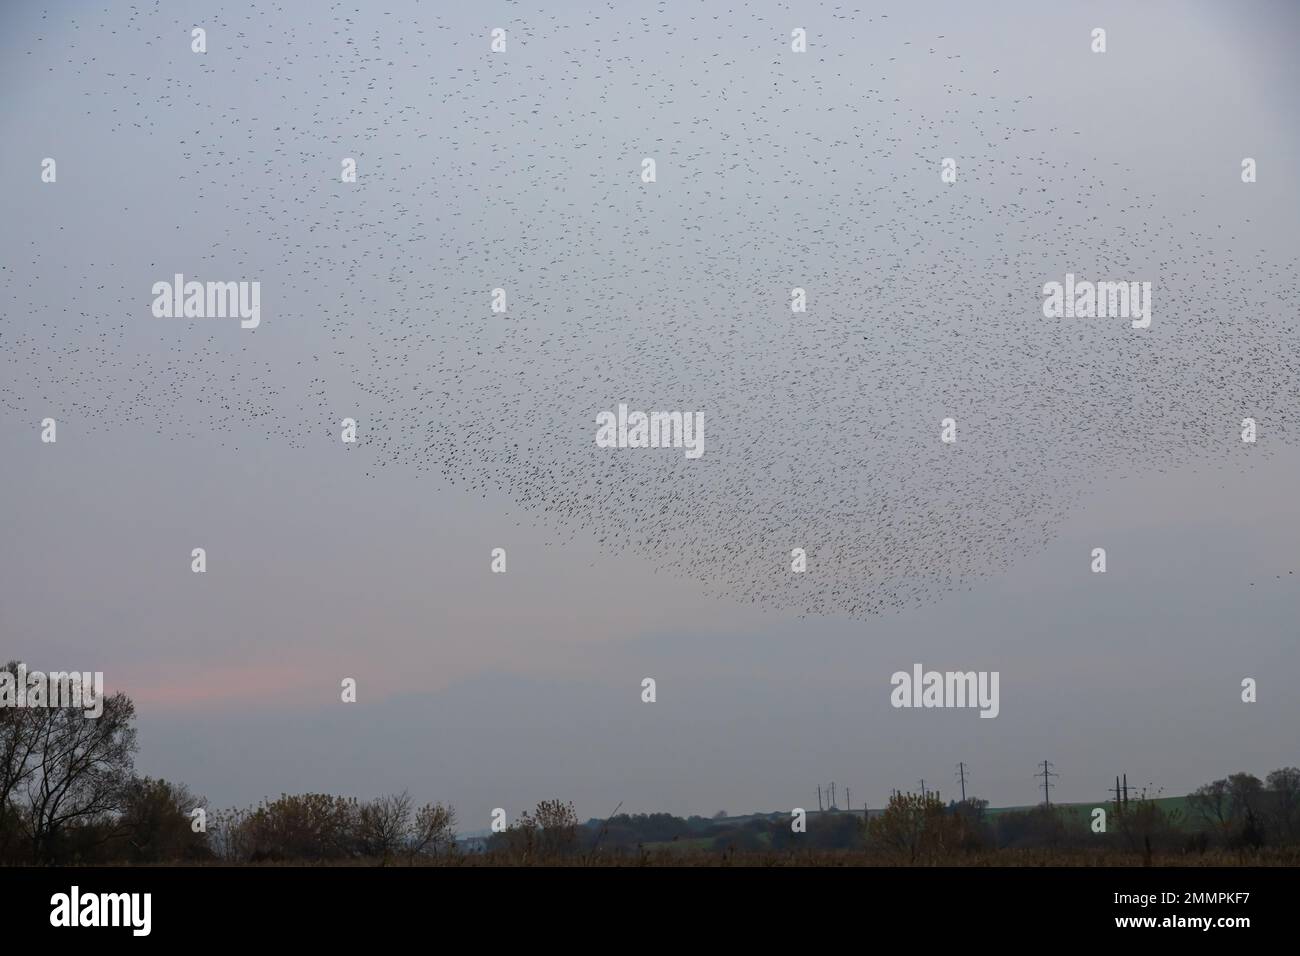 Schöne große Herde Stare. Im Januar und Februar versammelten sich Hunderttausende Stare in riesigen Wolken. Starling-Murmationen. Stockfoto